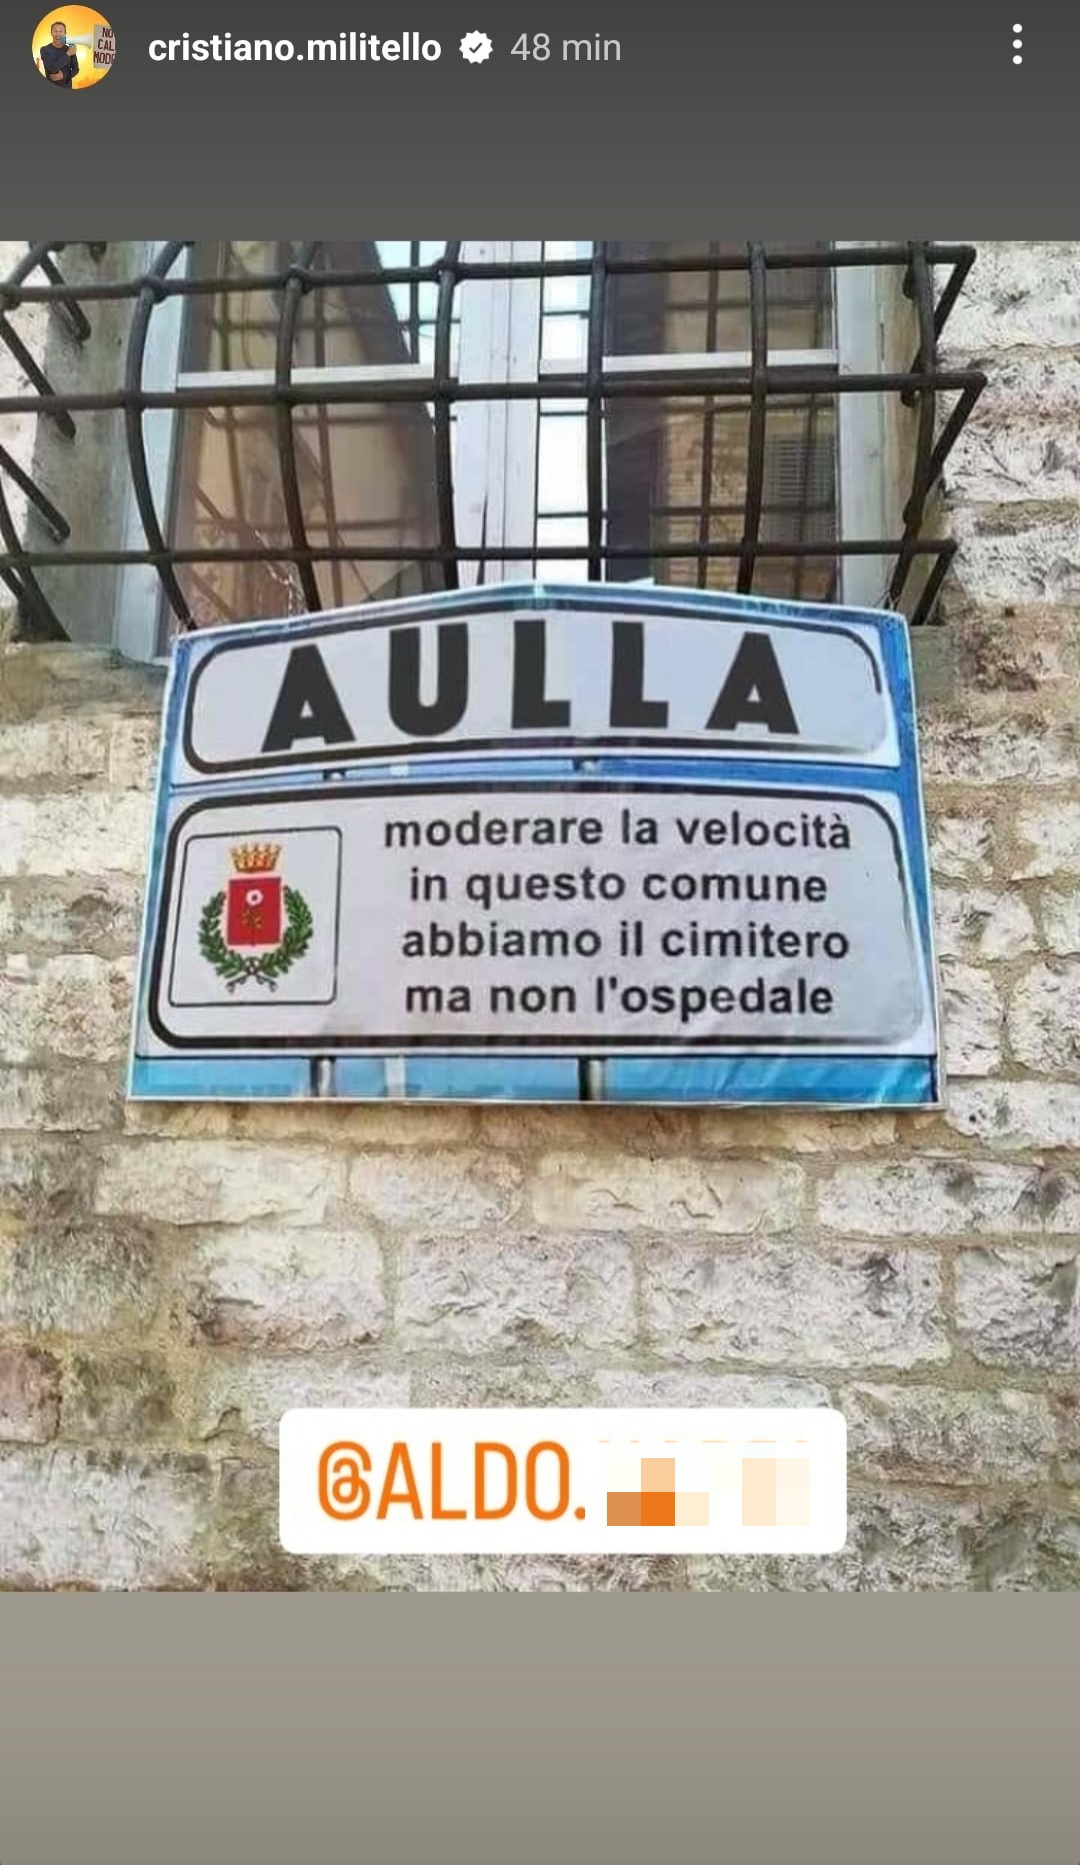 Aulla, comune della Toscana, dove c'è il cimitero ma non l'ospedale. Fonte: cristiano.militello - Instagram